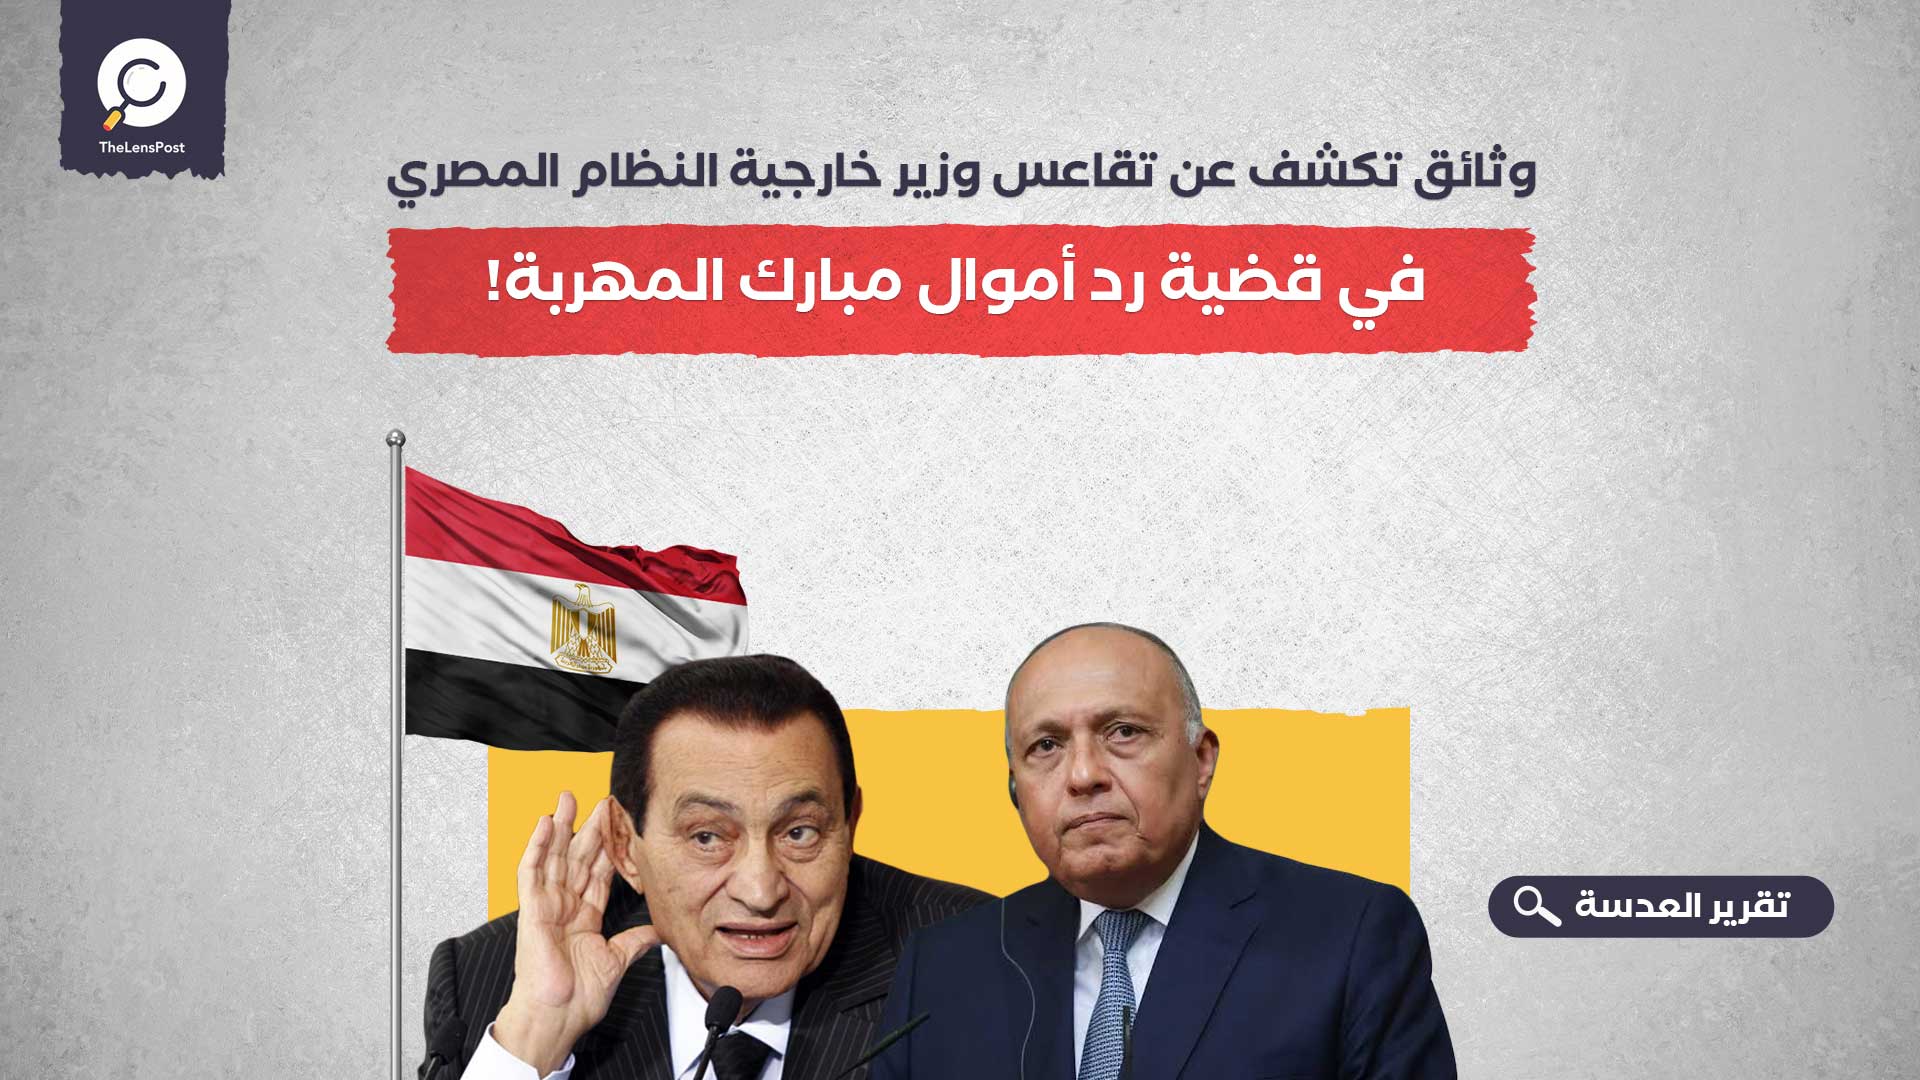 وثائق تكشف عن تقاعس وزير خارجية النظام المصري في قضية رد أموال مبارك المهربة!